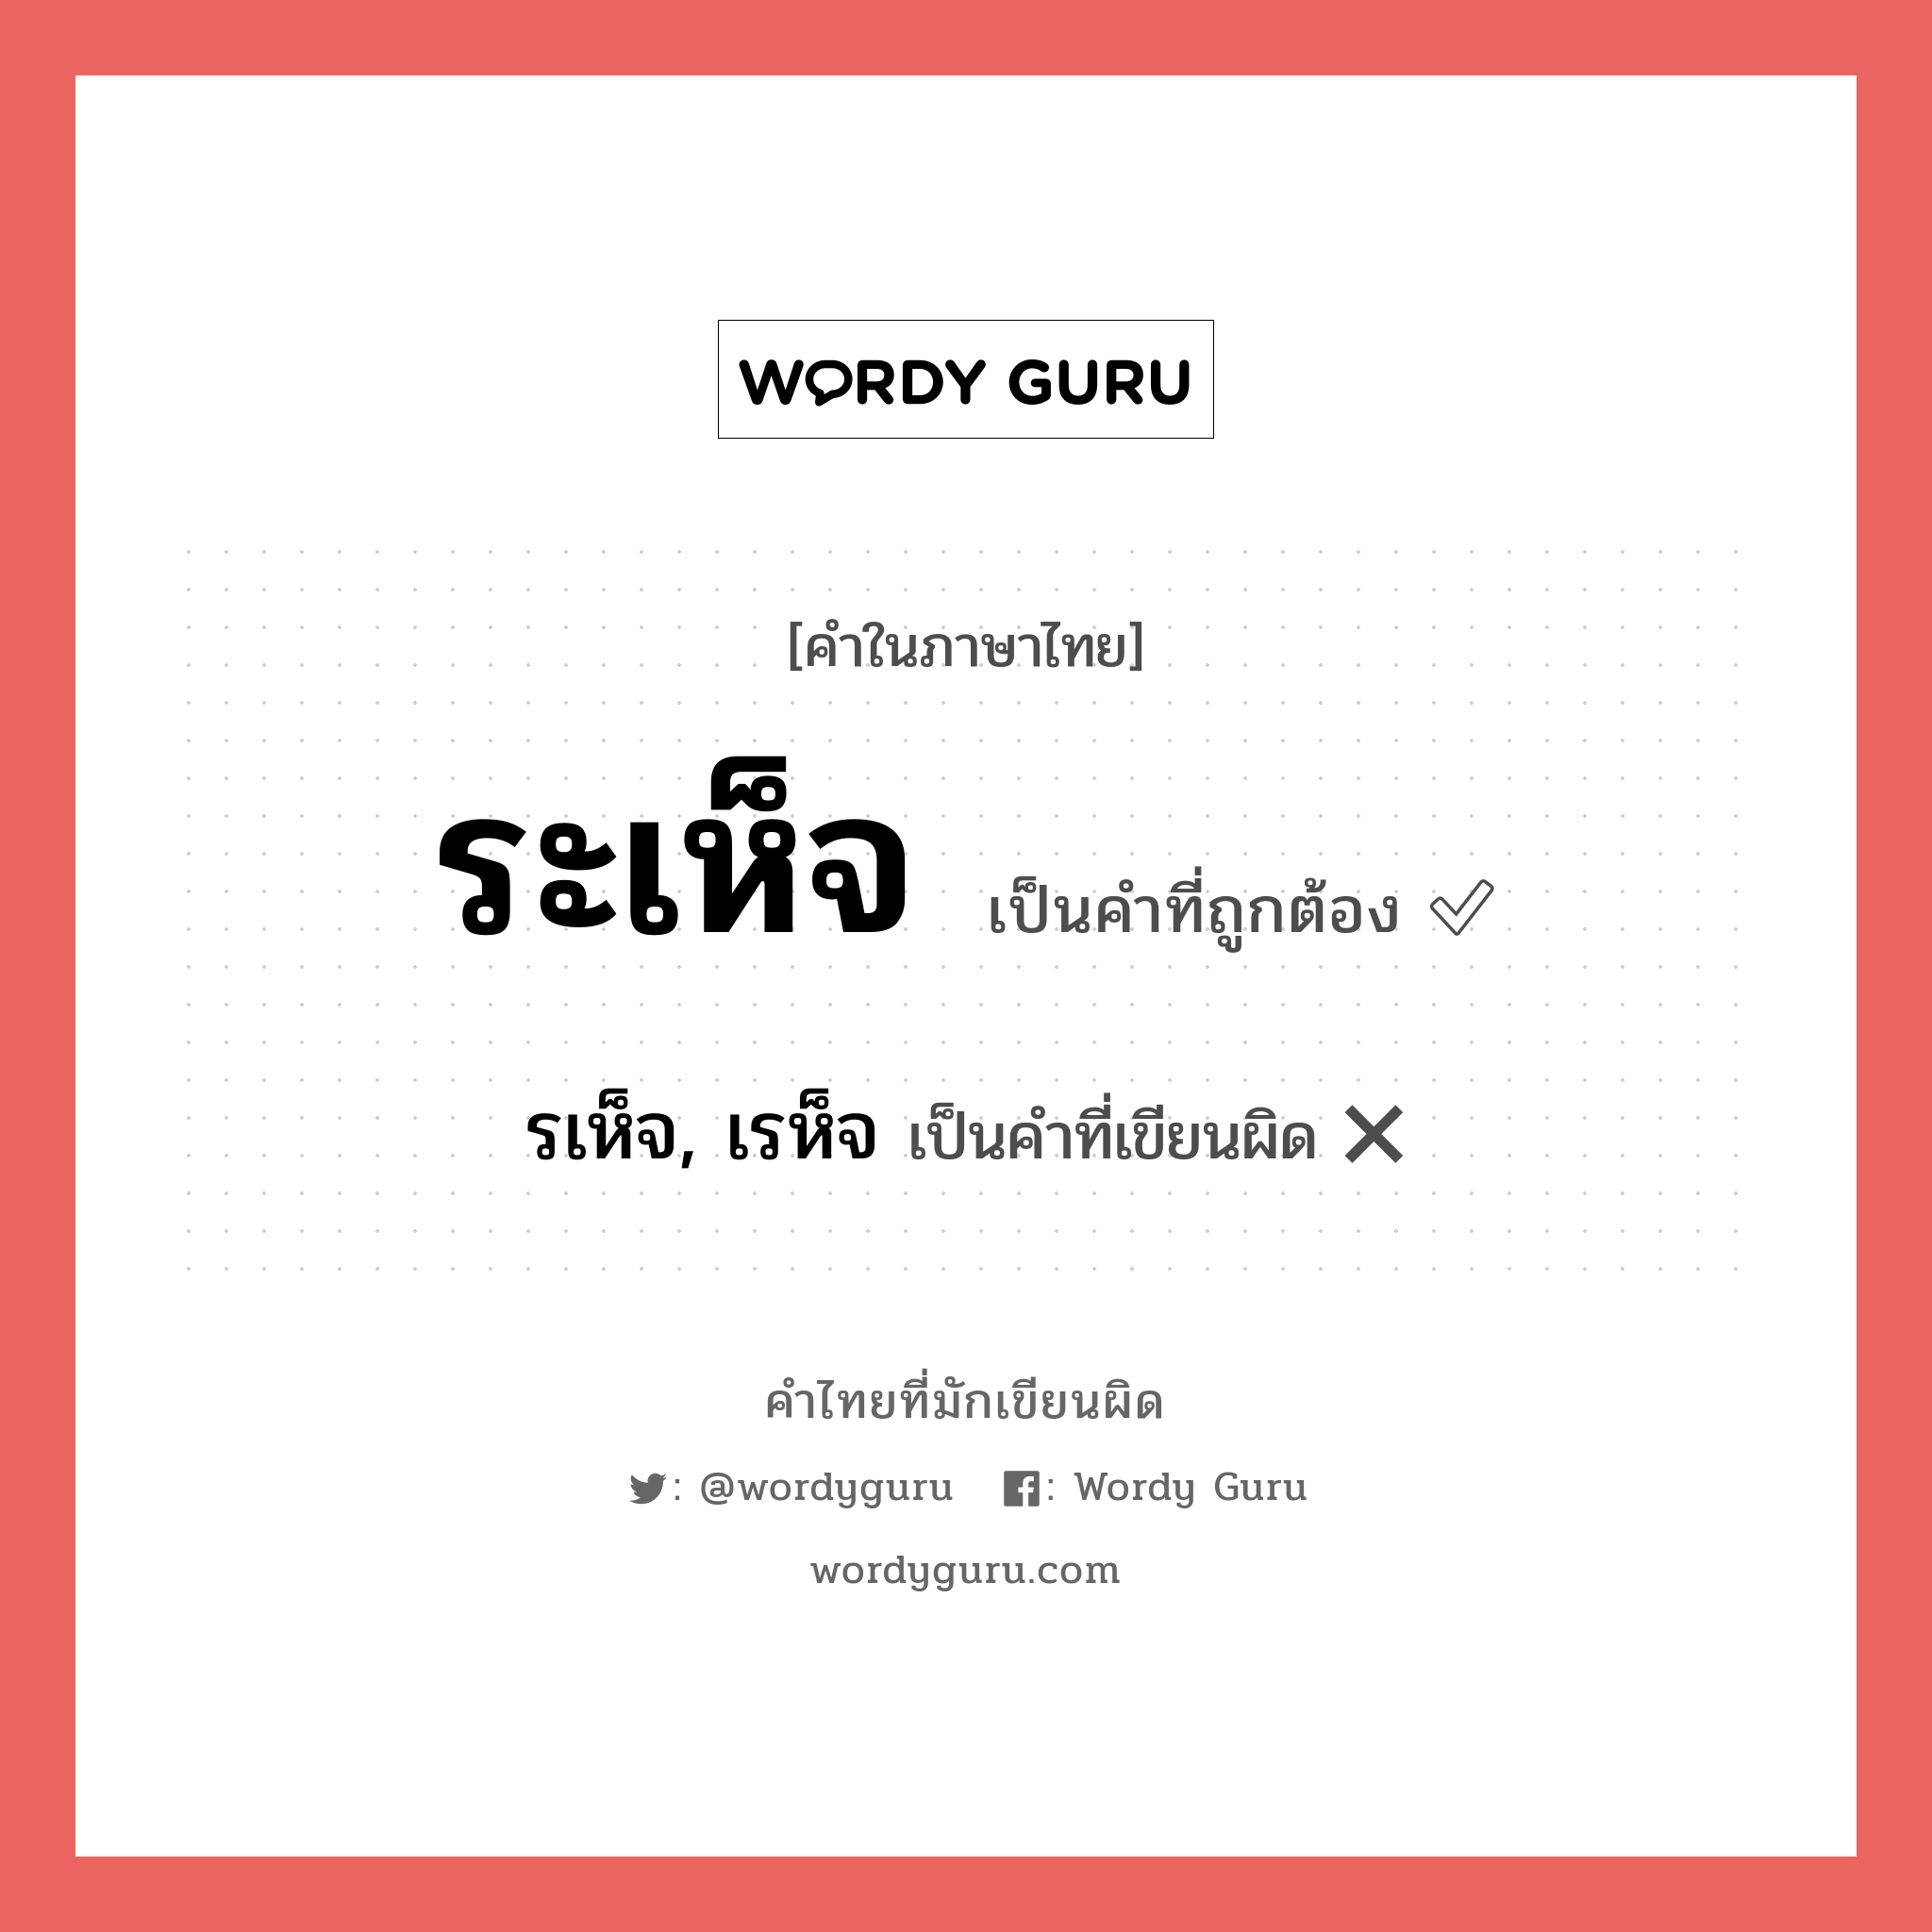 รเห็จ, เรห็จ หรือ ระเห็จ คำไหนเขียนถูก?, คำในภาษาไทยที่มักเขียนผิด รเห็จ, เรห็จ คำที่ผิด ❌ ระเห็จ